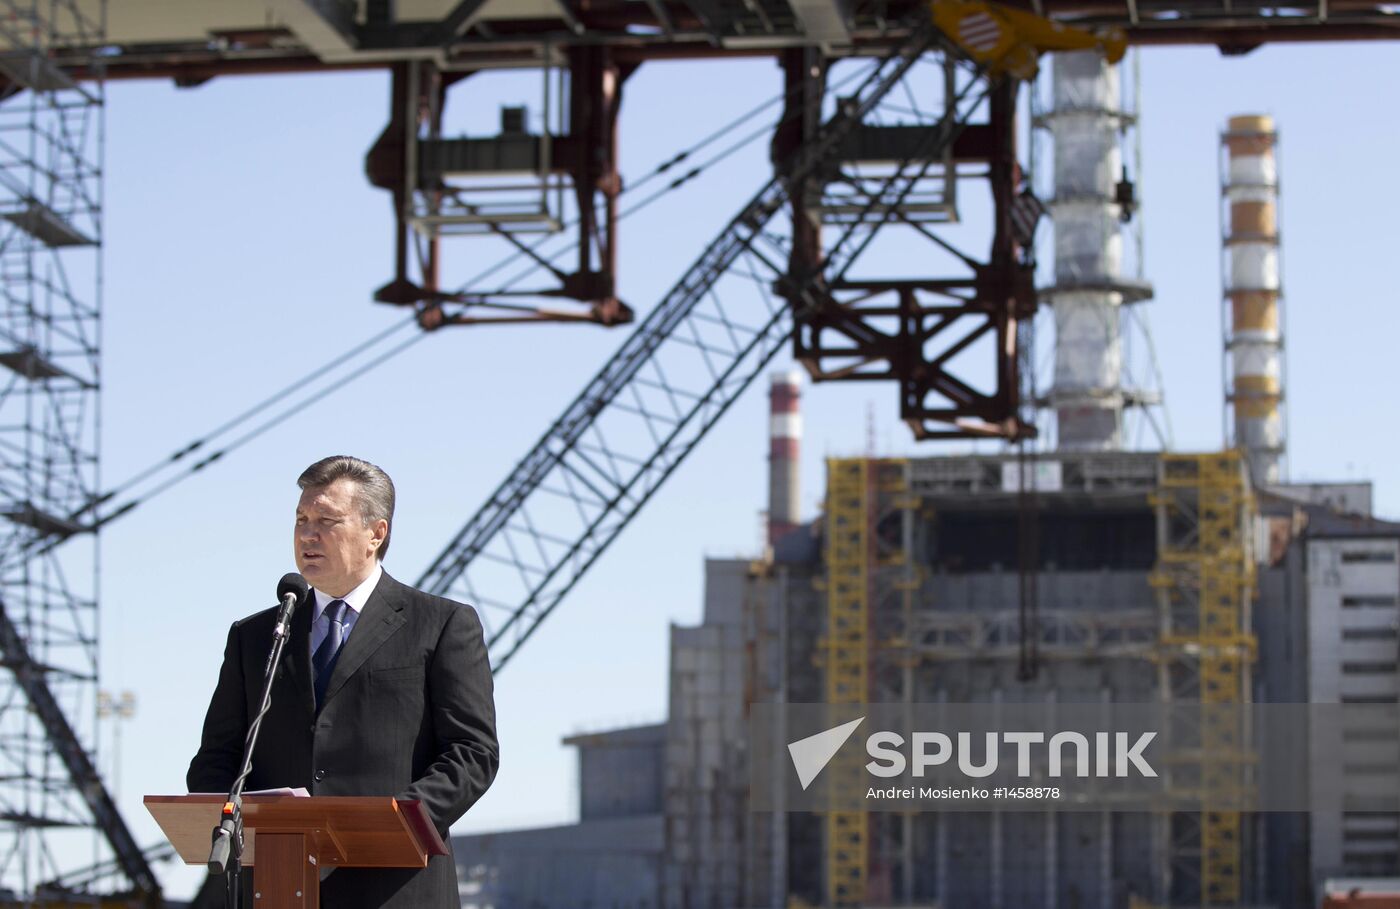 Ukraine's President Viktor Yanukovych visits Chernobyl Plant